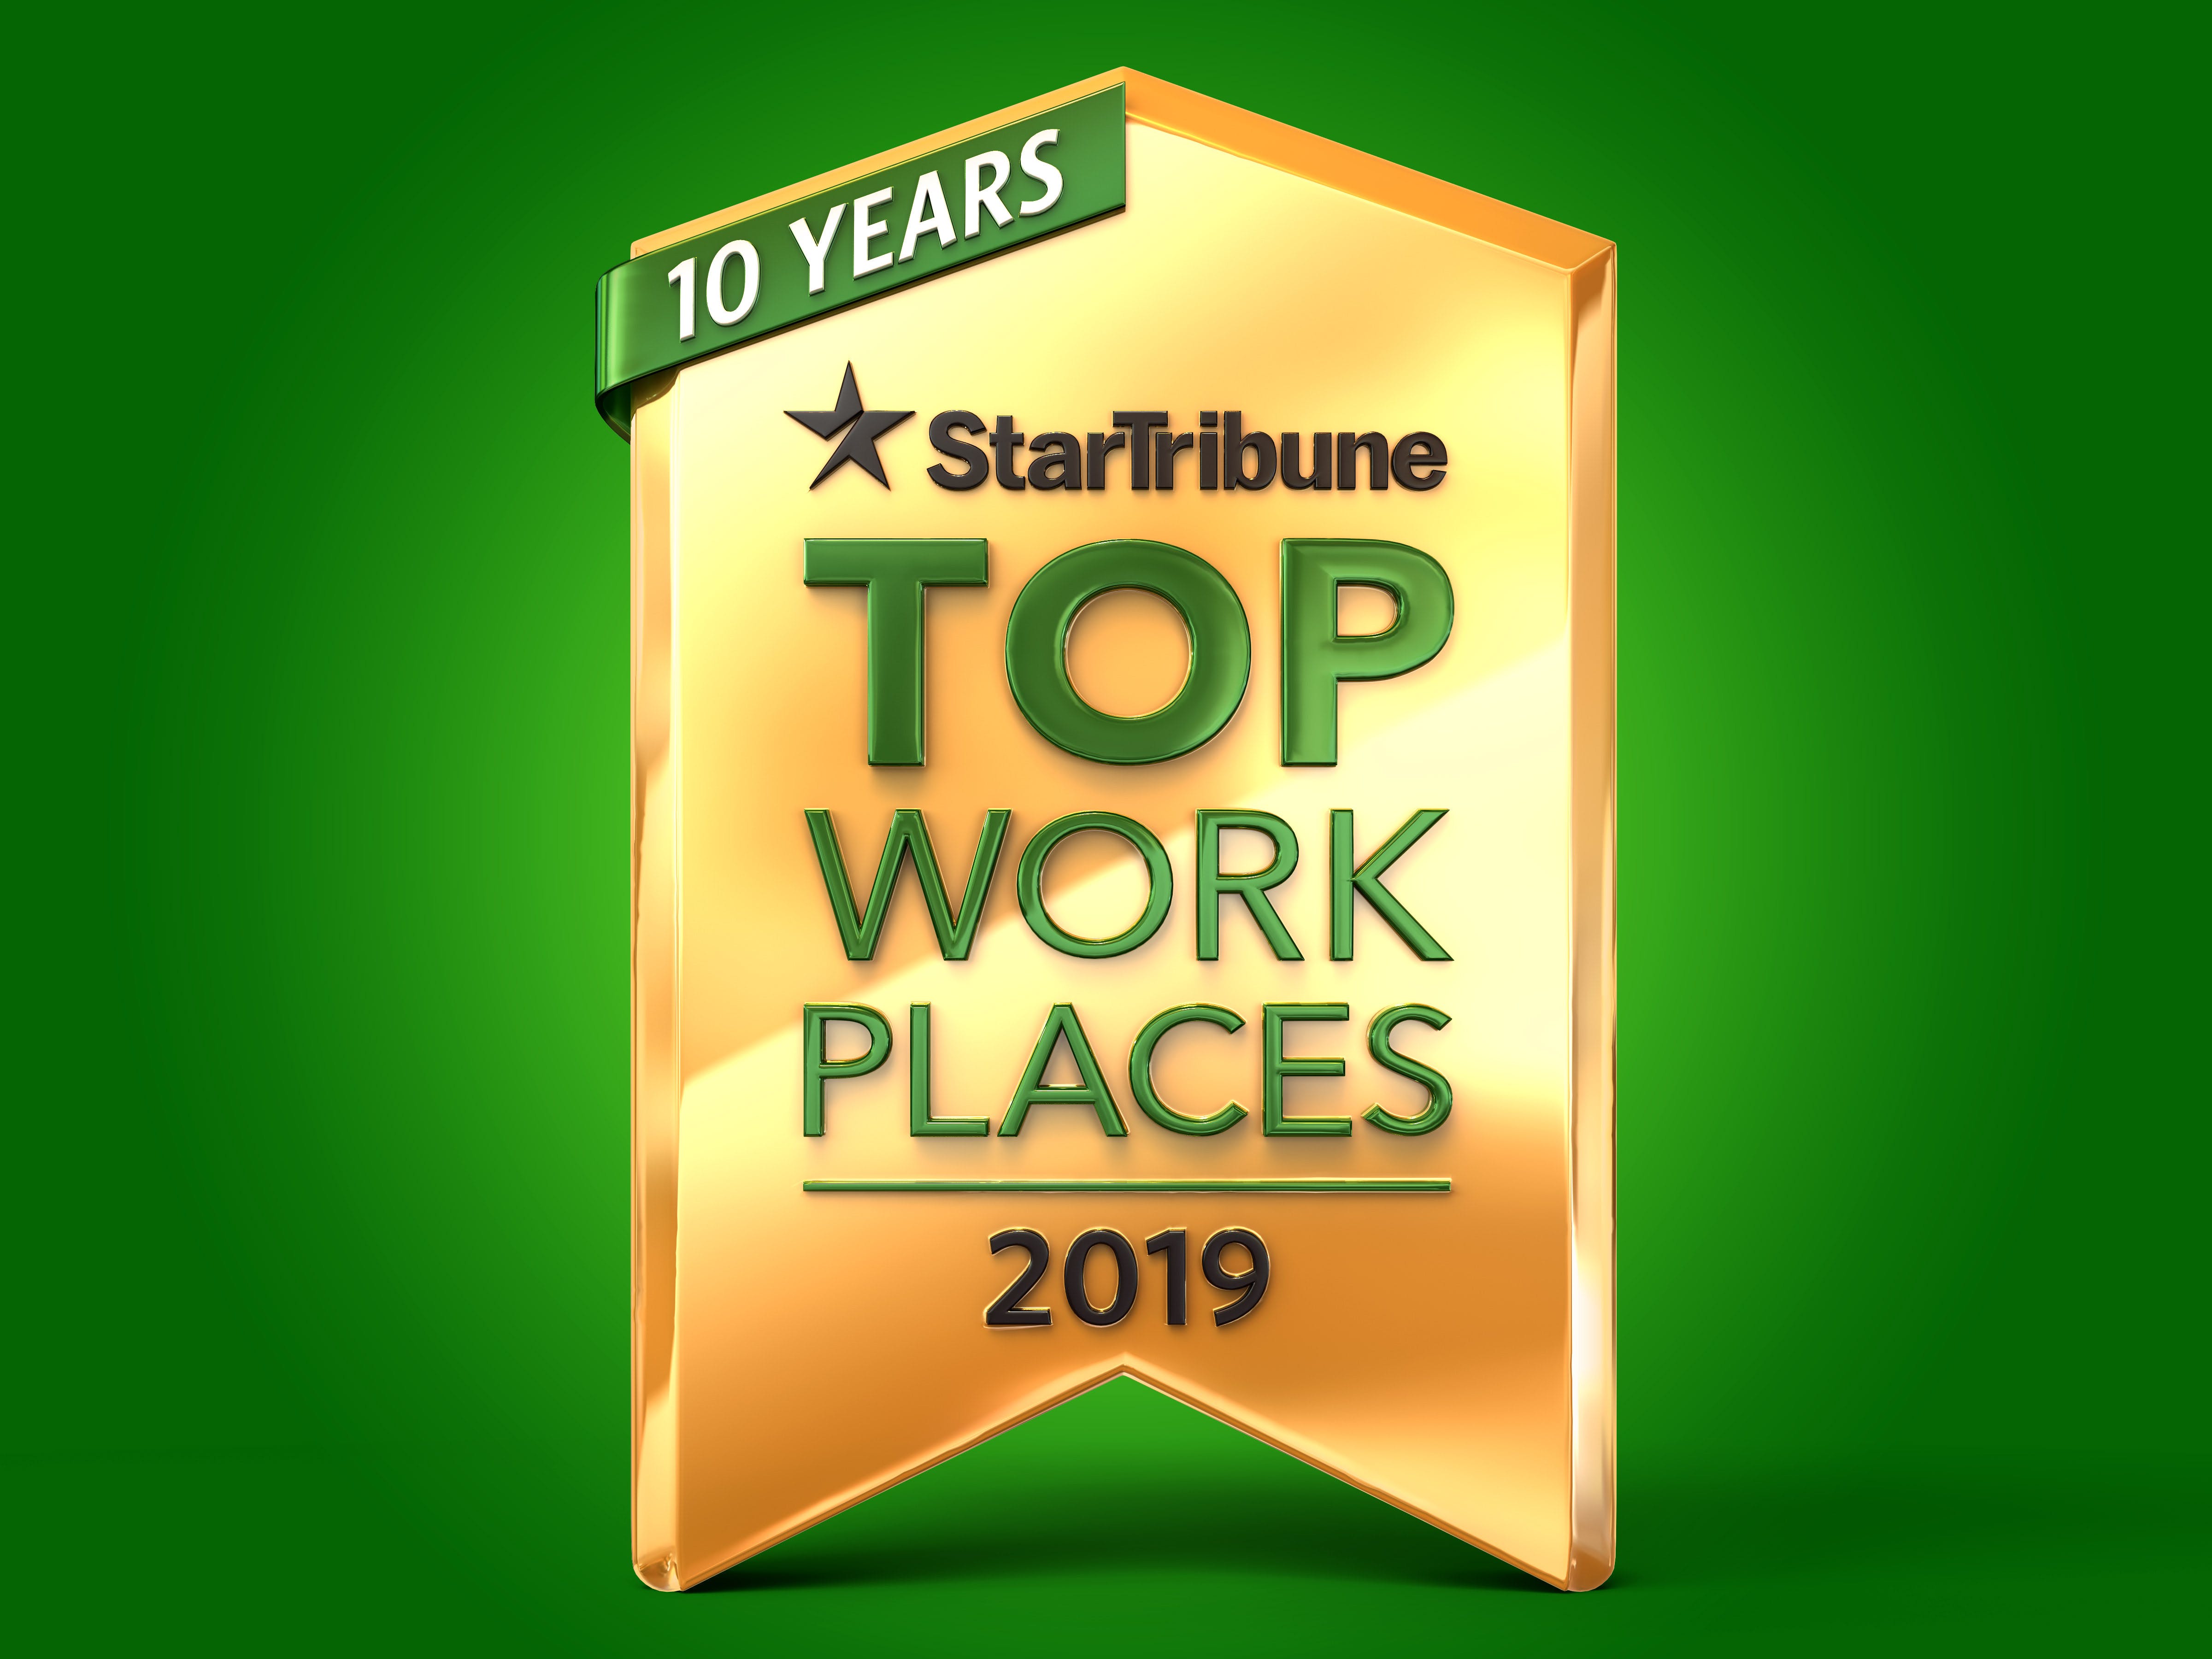 Startibune Logo - Top Workplaces - StarTribune.com